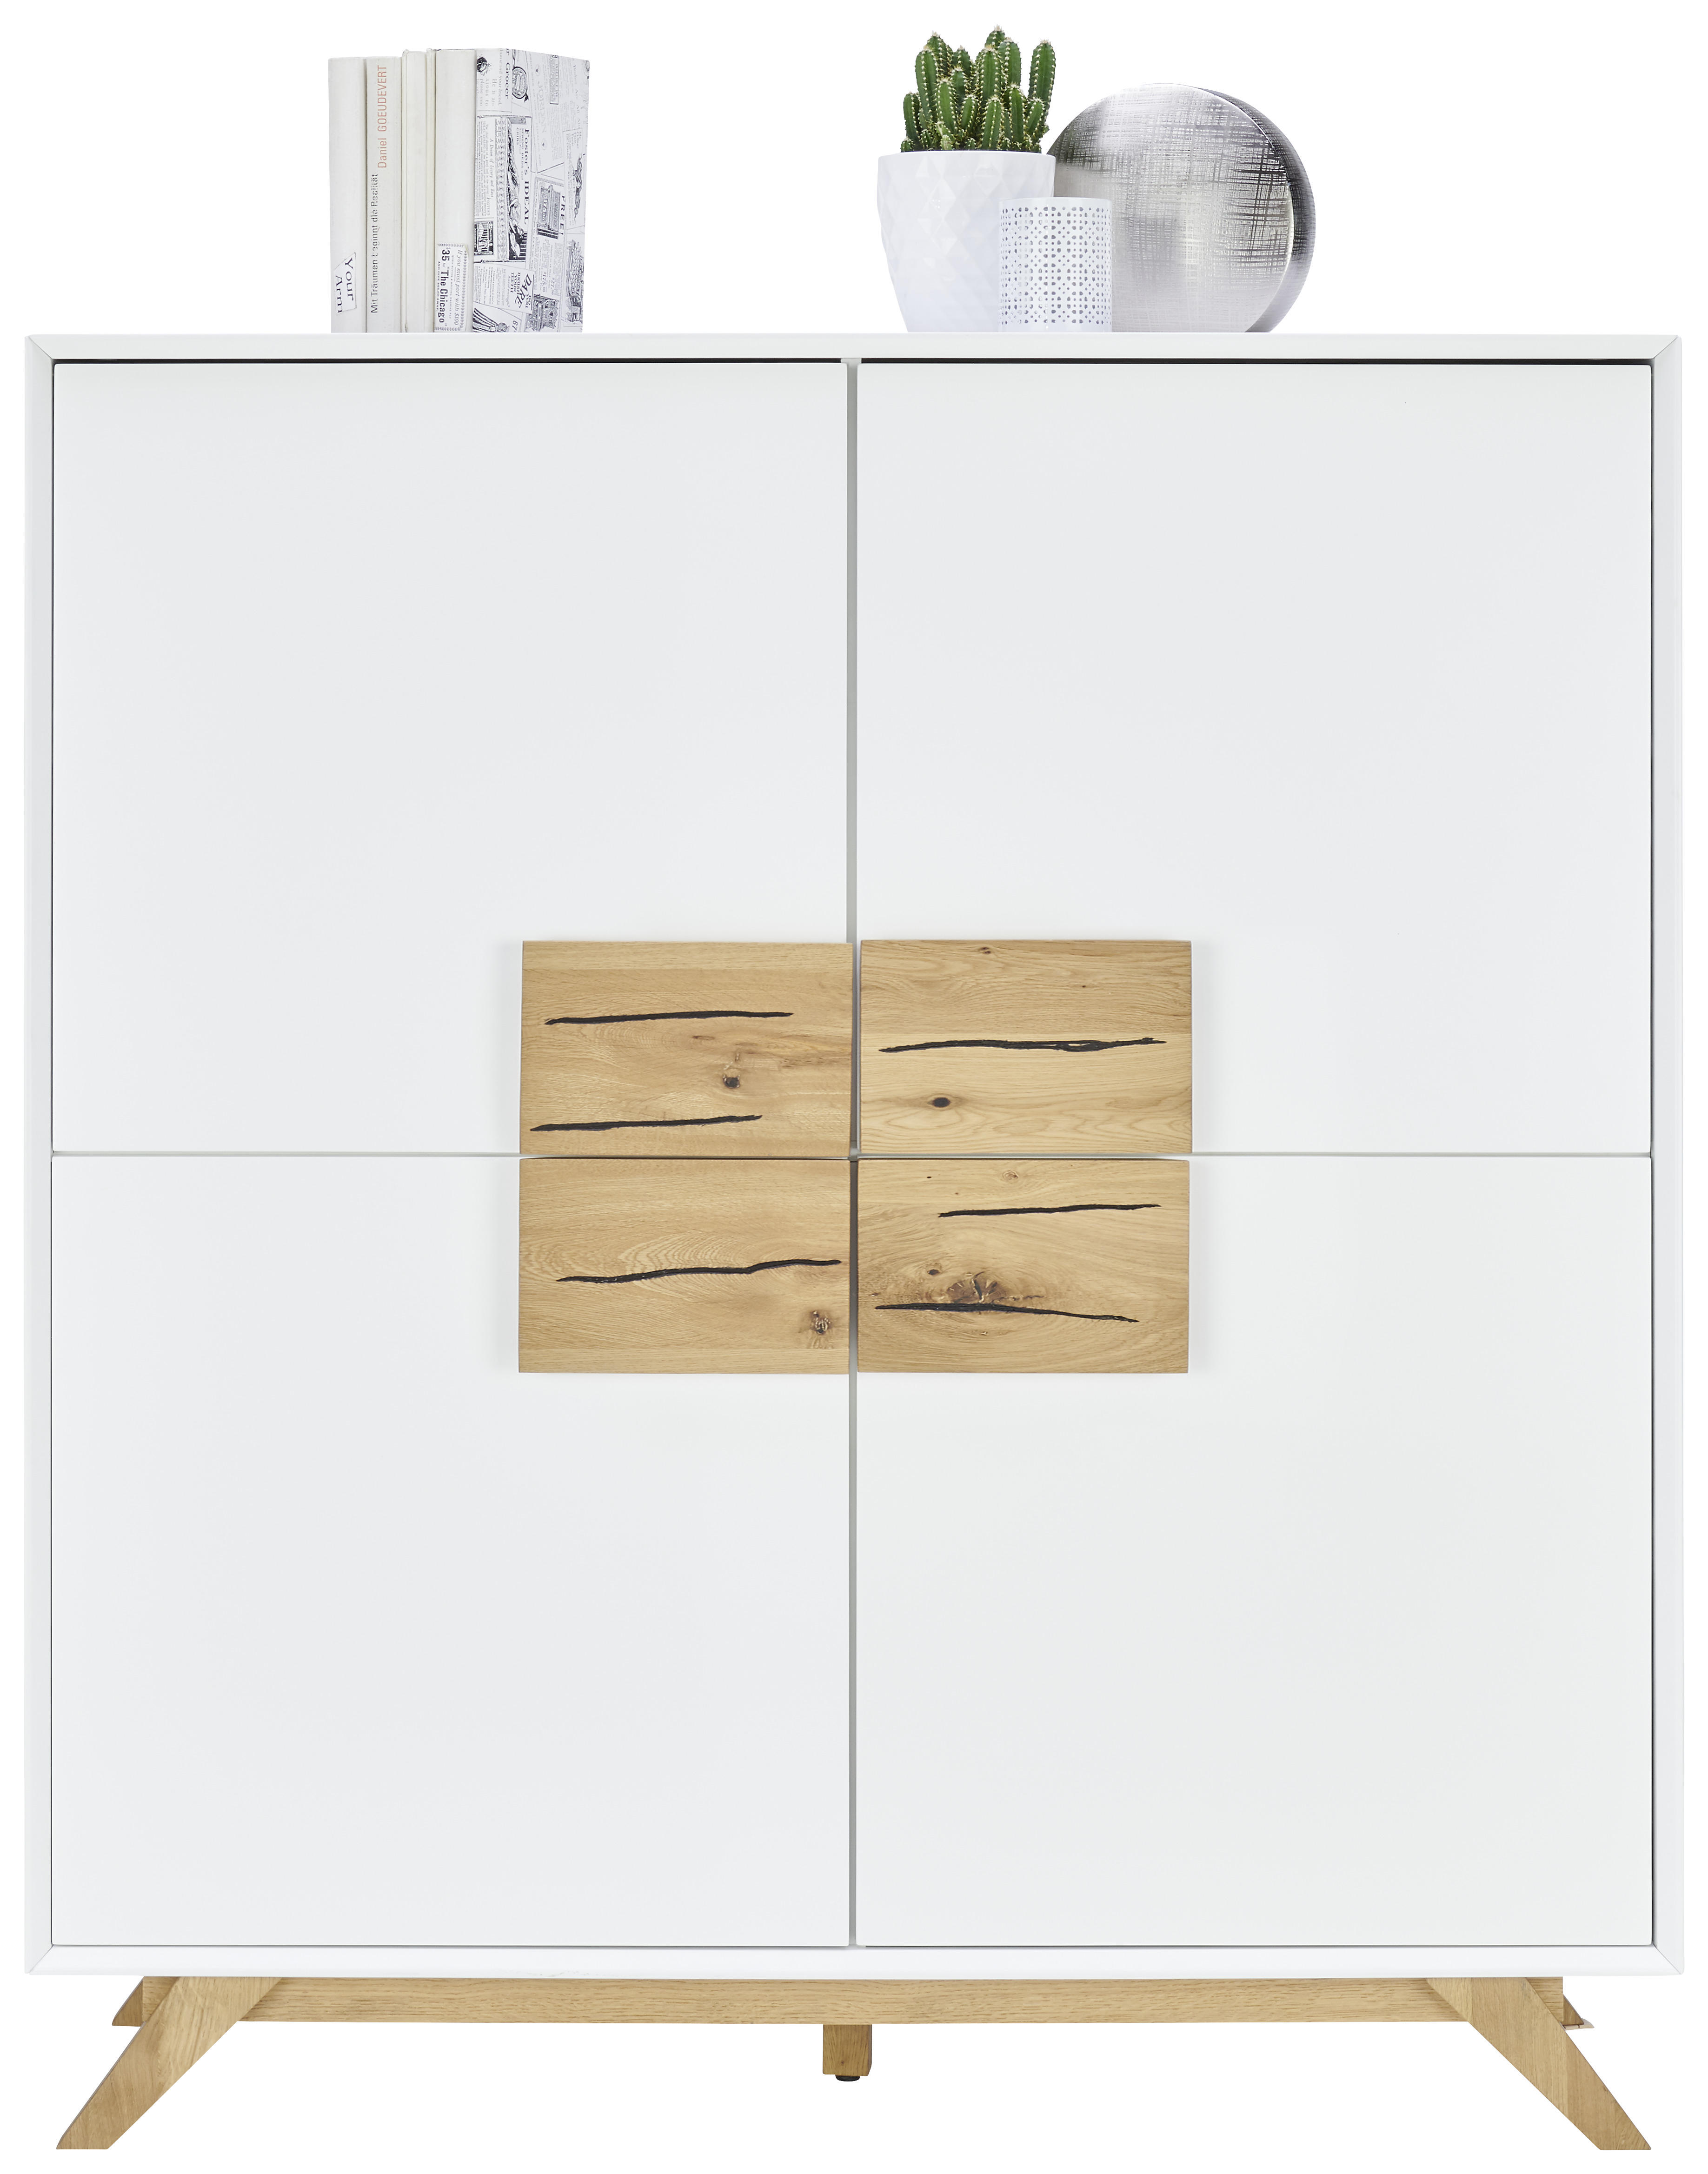 HIGHBOARD 120/133/40 cm  - Weiss/Eichefarben, Design, Holz/Holzwerkstoff (120/133/40cm) - Xora